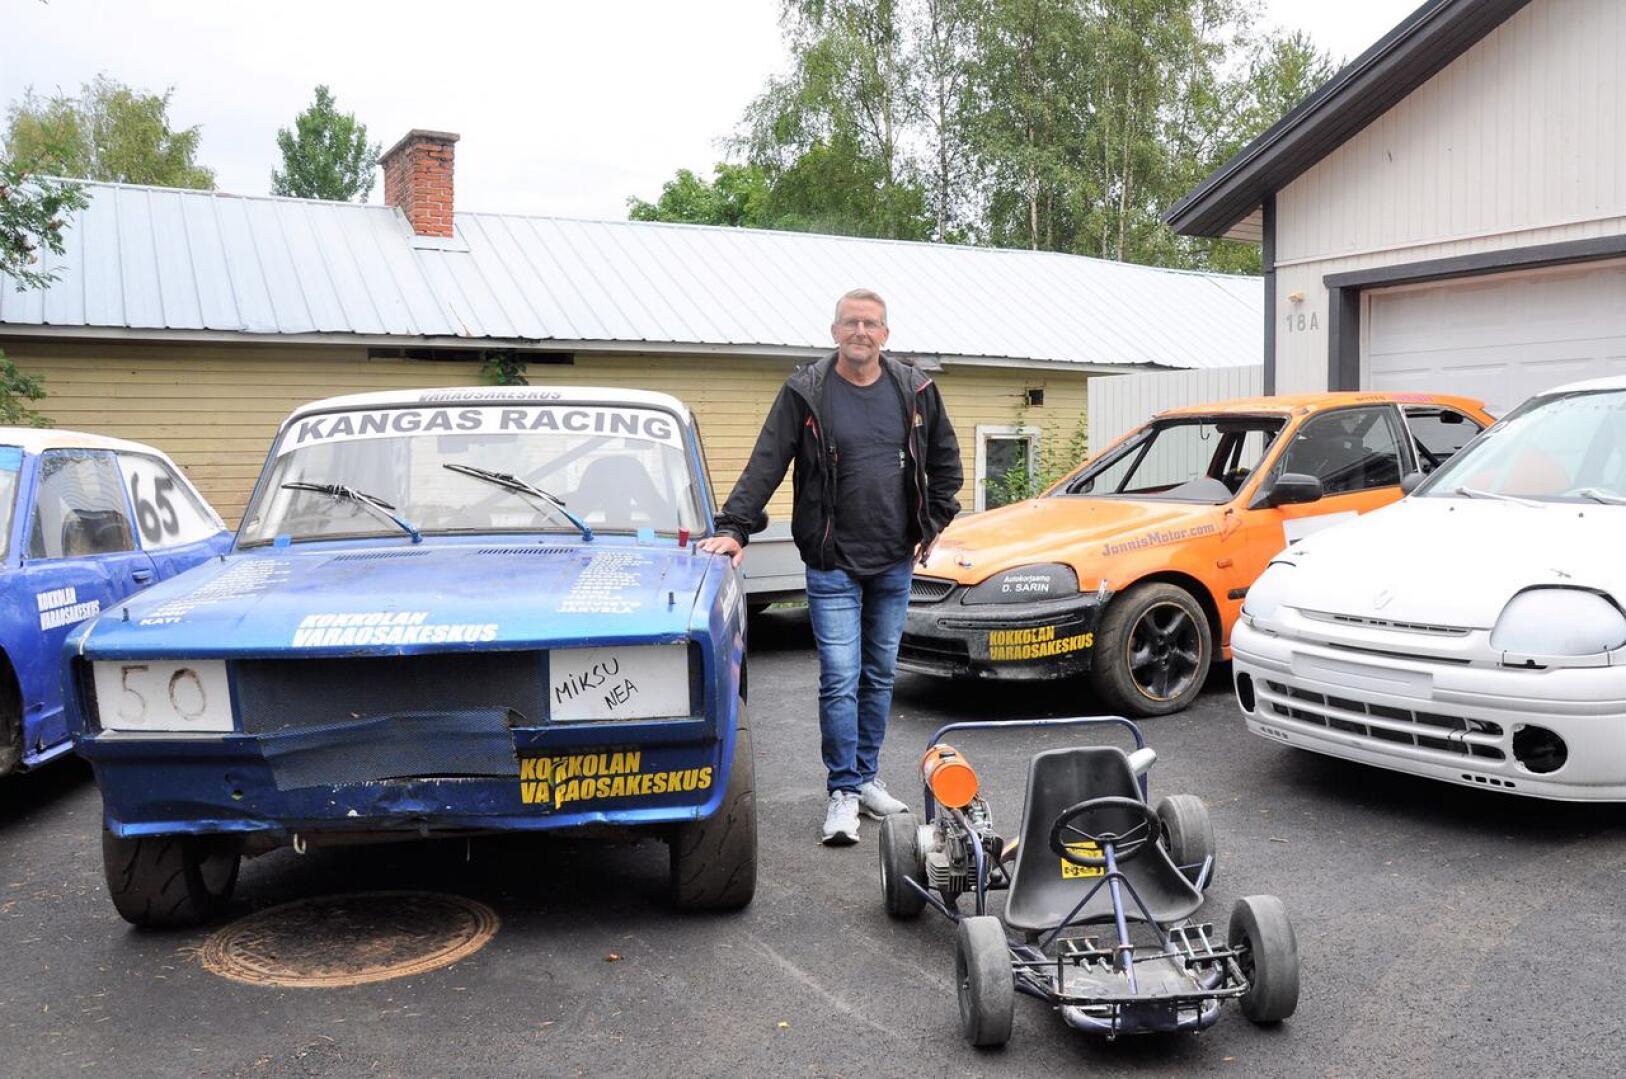 Marko Kangas ajaa tällä hetkellä enimmäkseen rallicrossia V1600 RC -sarjassa. Hänen kilpa-autonsa on taustalla oleva oranssi Honda Civic. Oikealla on pojan Renault Clio, edessä pojanpojan mikroauto ja vasemmalla perheen jokkisautot.